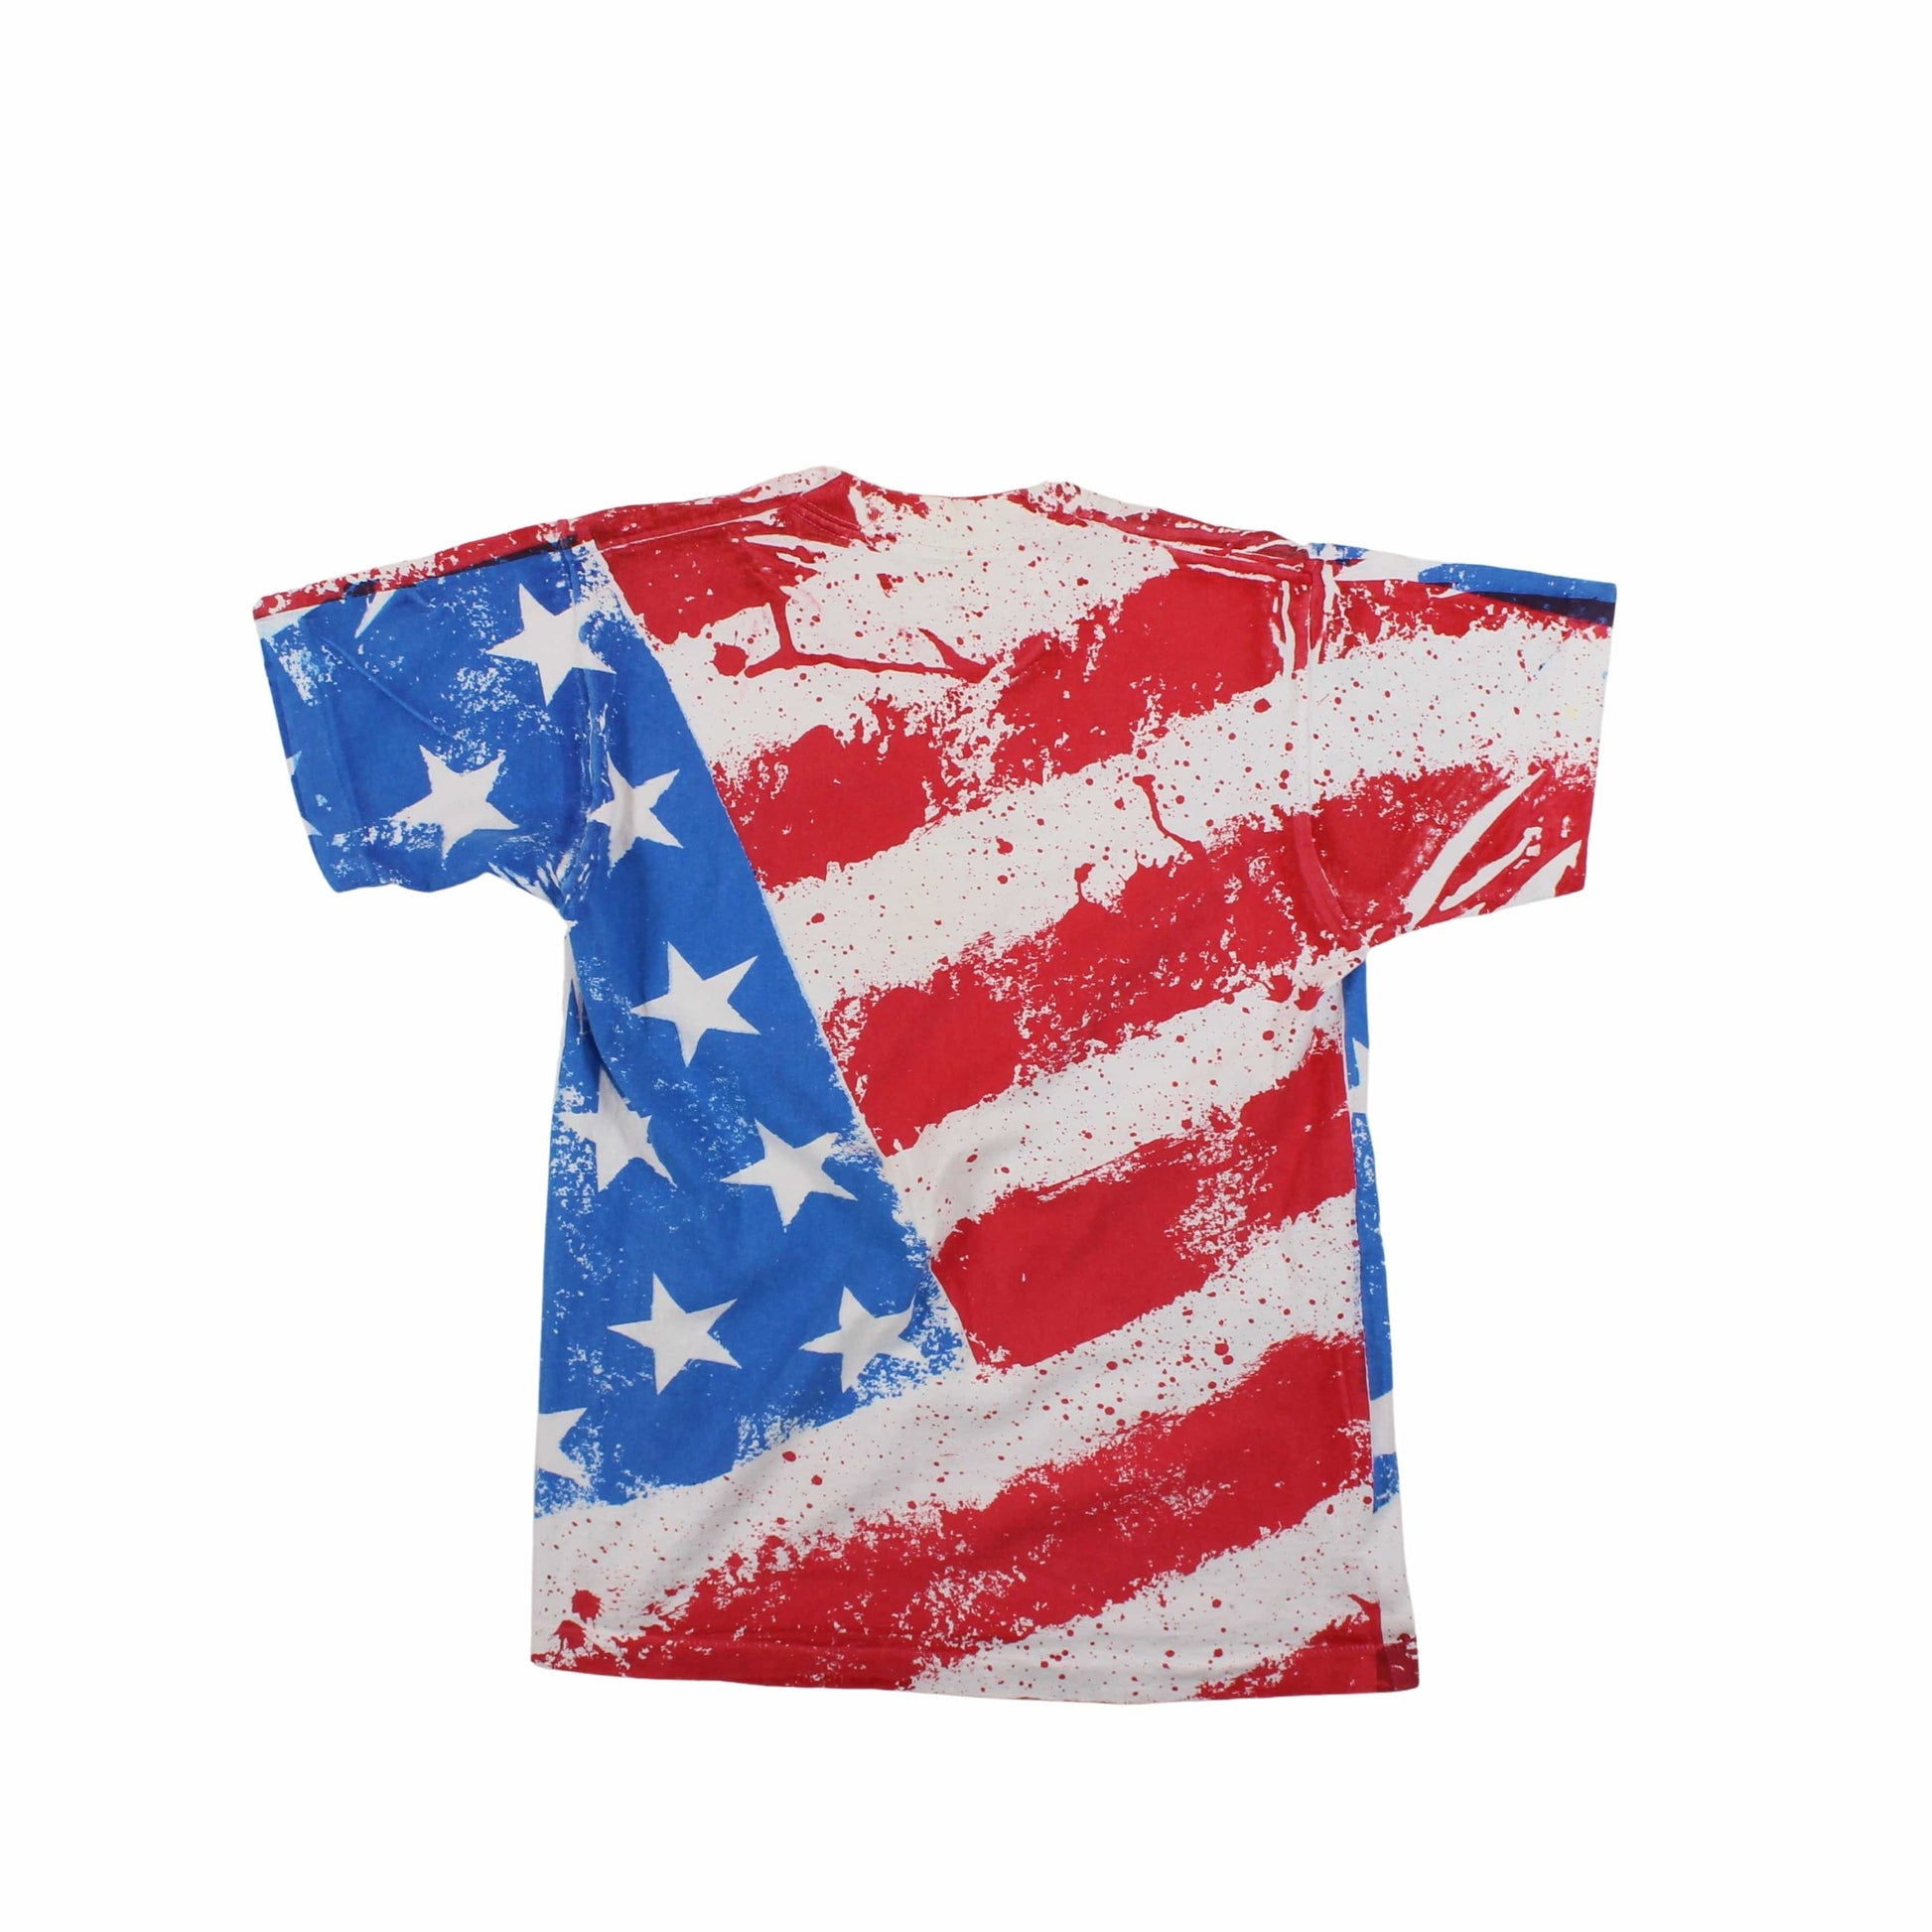 Vintage Vintage USA Flag All Over Print T Shirt Size Large Fits Medium